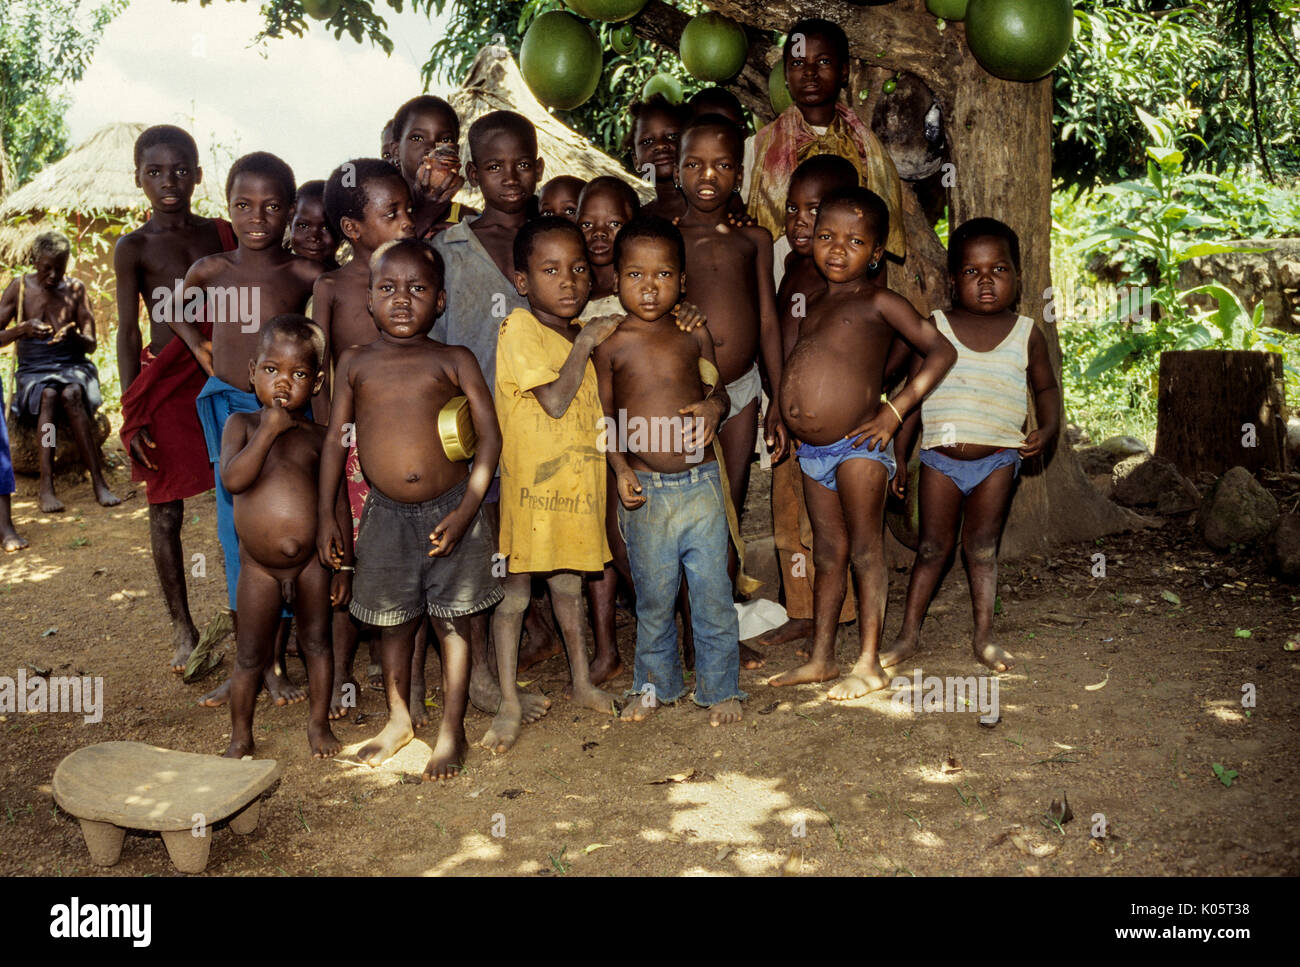 Cote d'Ivoire, Ivory Coast, Tabakala, West Africa.  Village Boys Showing Signs of Malnutrition, intestinal parasites, Possible Kwashiorkor. Stock Photo